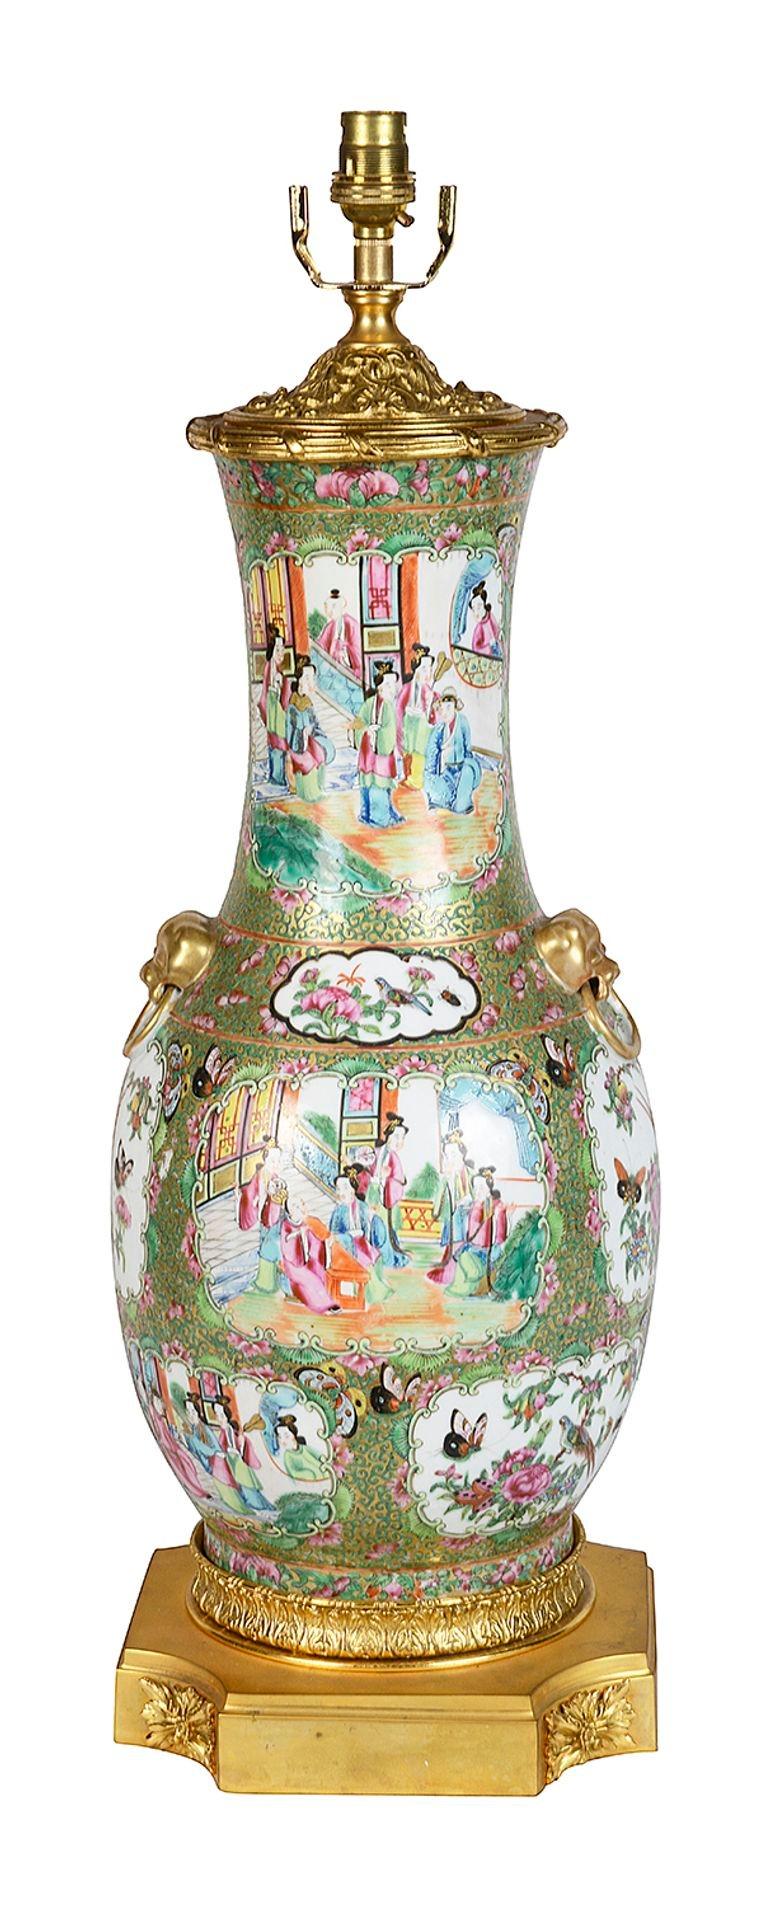 Un vase / lampe à médaillon en rose de Chine de très bonne qualité, datant du 19e siècle. Panneaux peints à la main en médaillon représentant des scènes classiques de divers courtisans. Le fond est orné d'un décor typique de feuillage vert. Montures